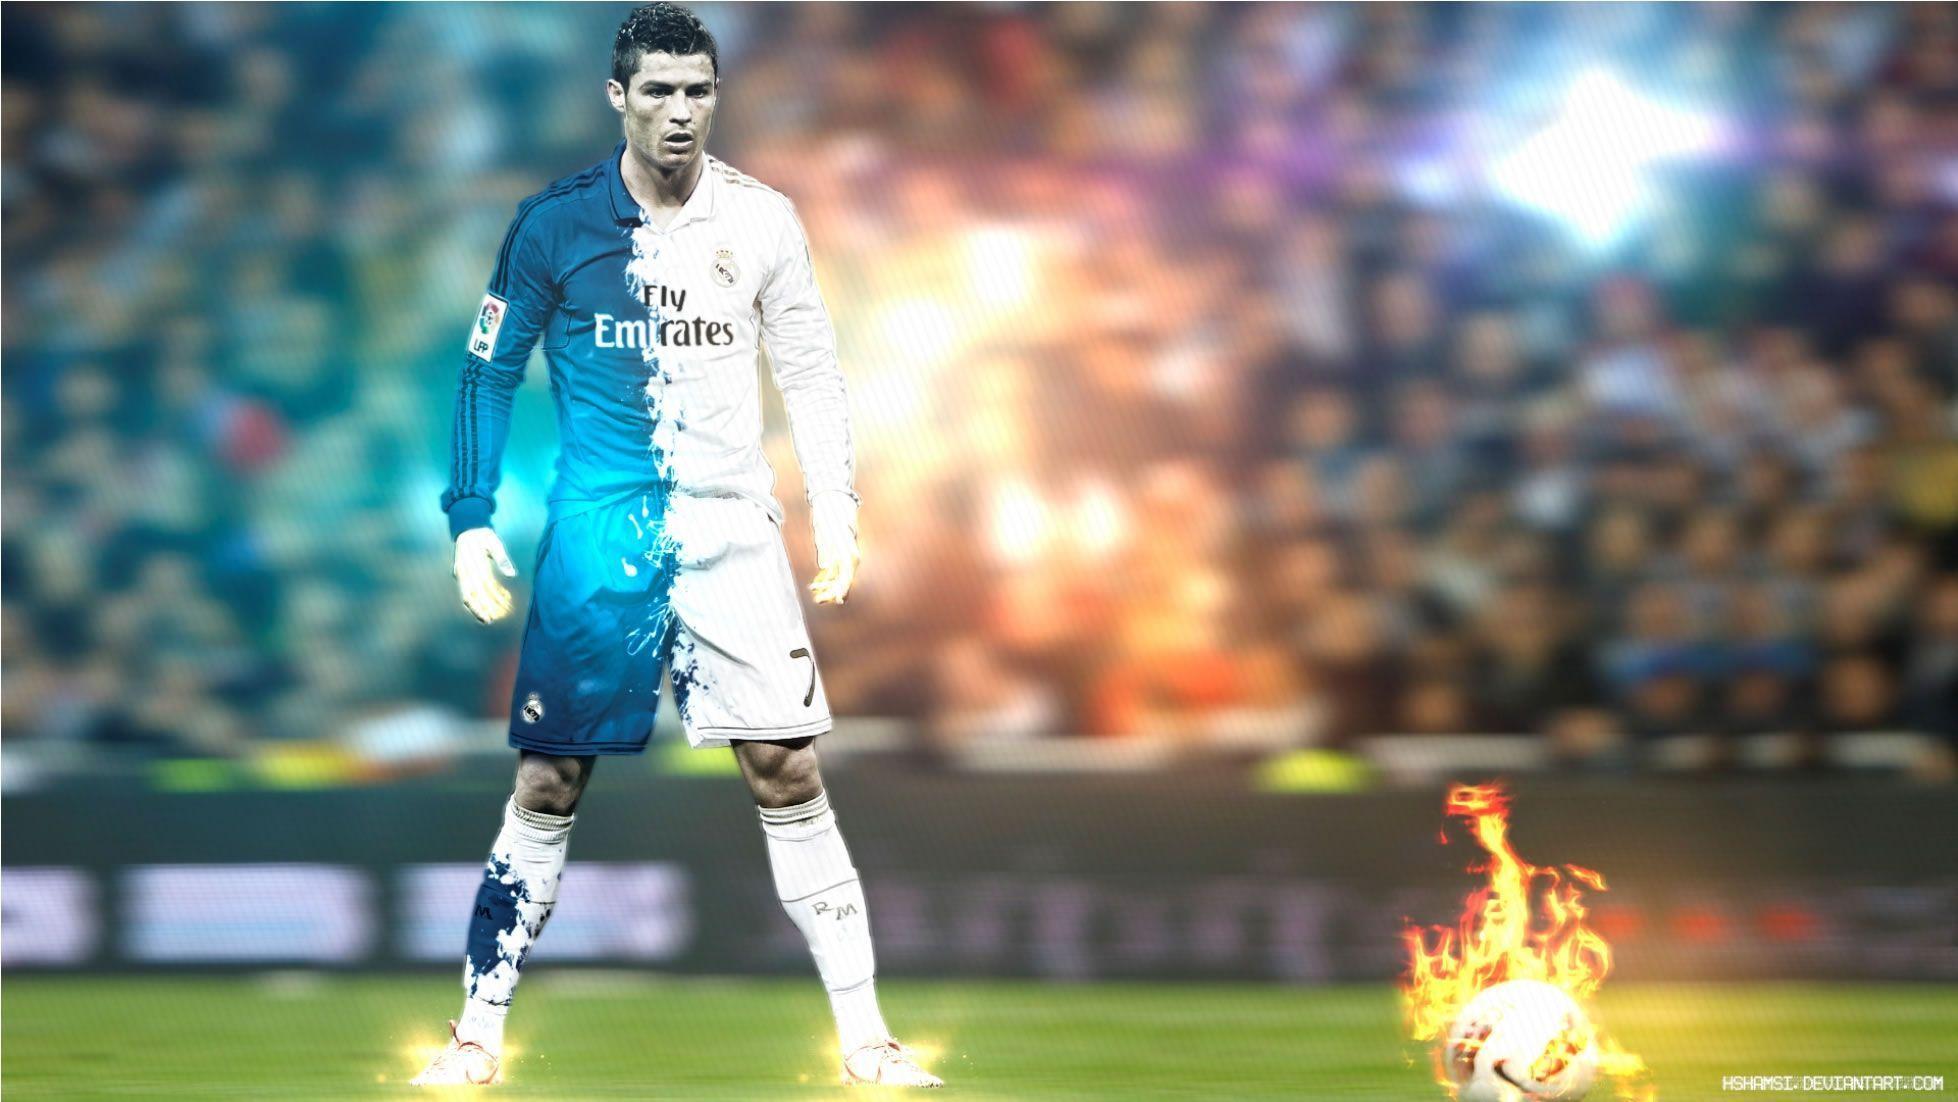 Cristiano Ronaldo Wallpaper for Desktop. V45. Cristiano Ronaldo Collection